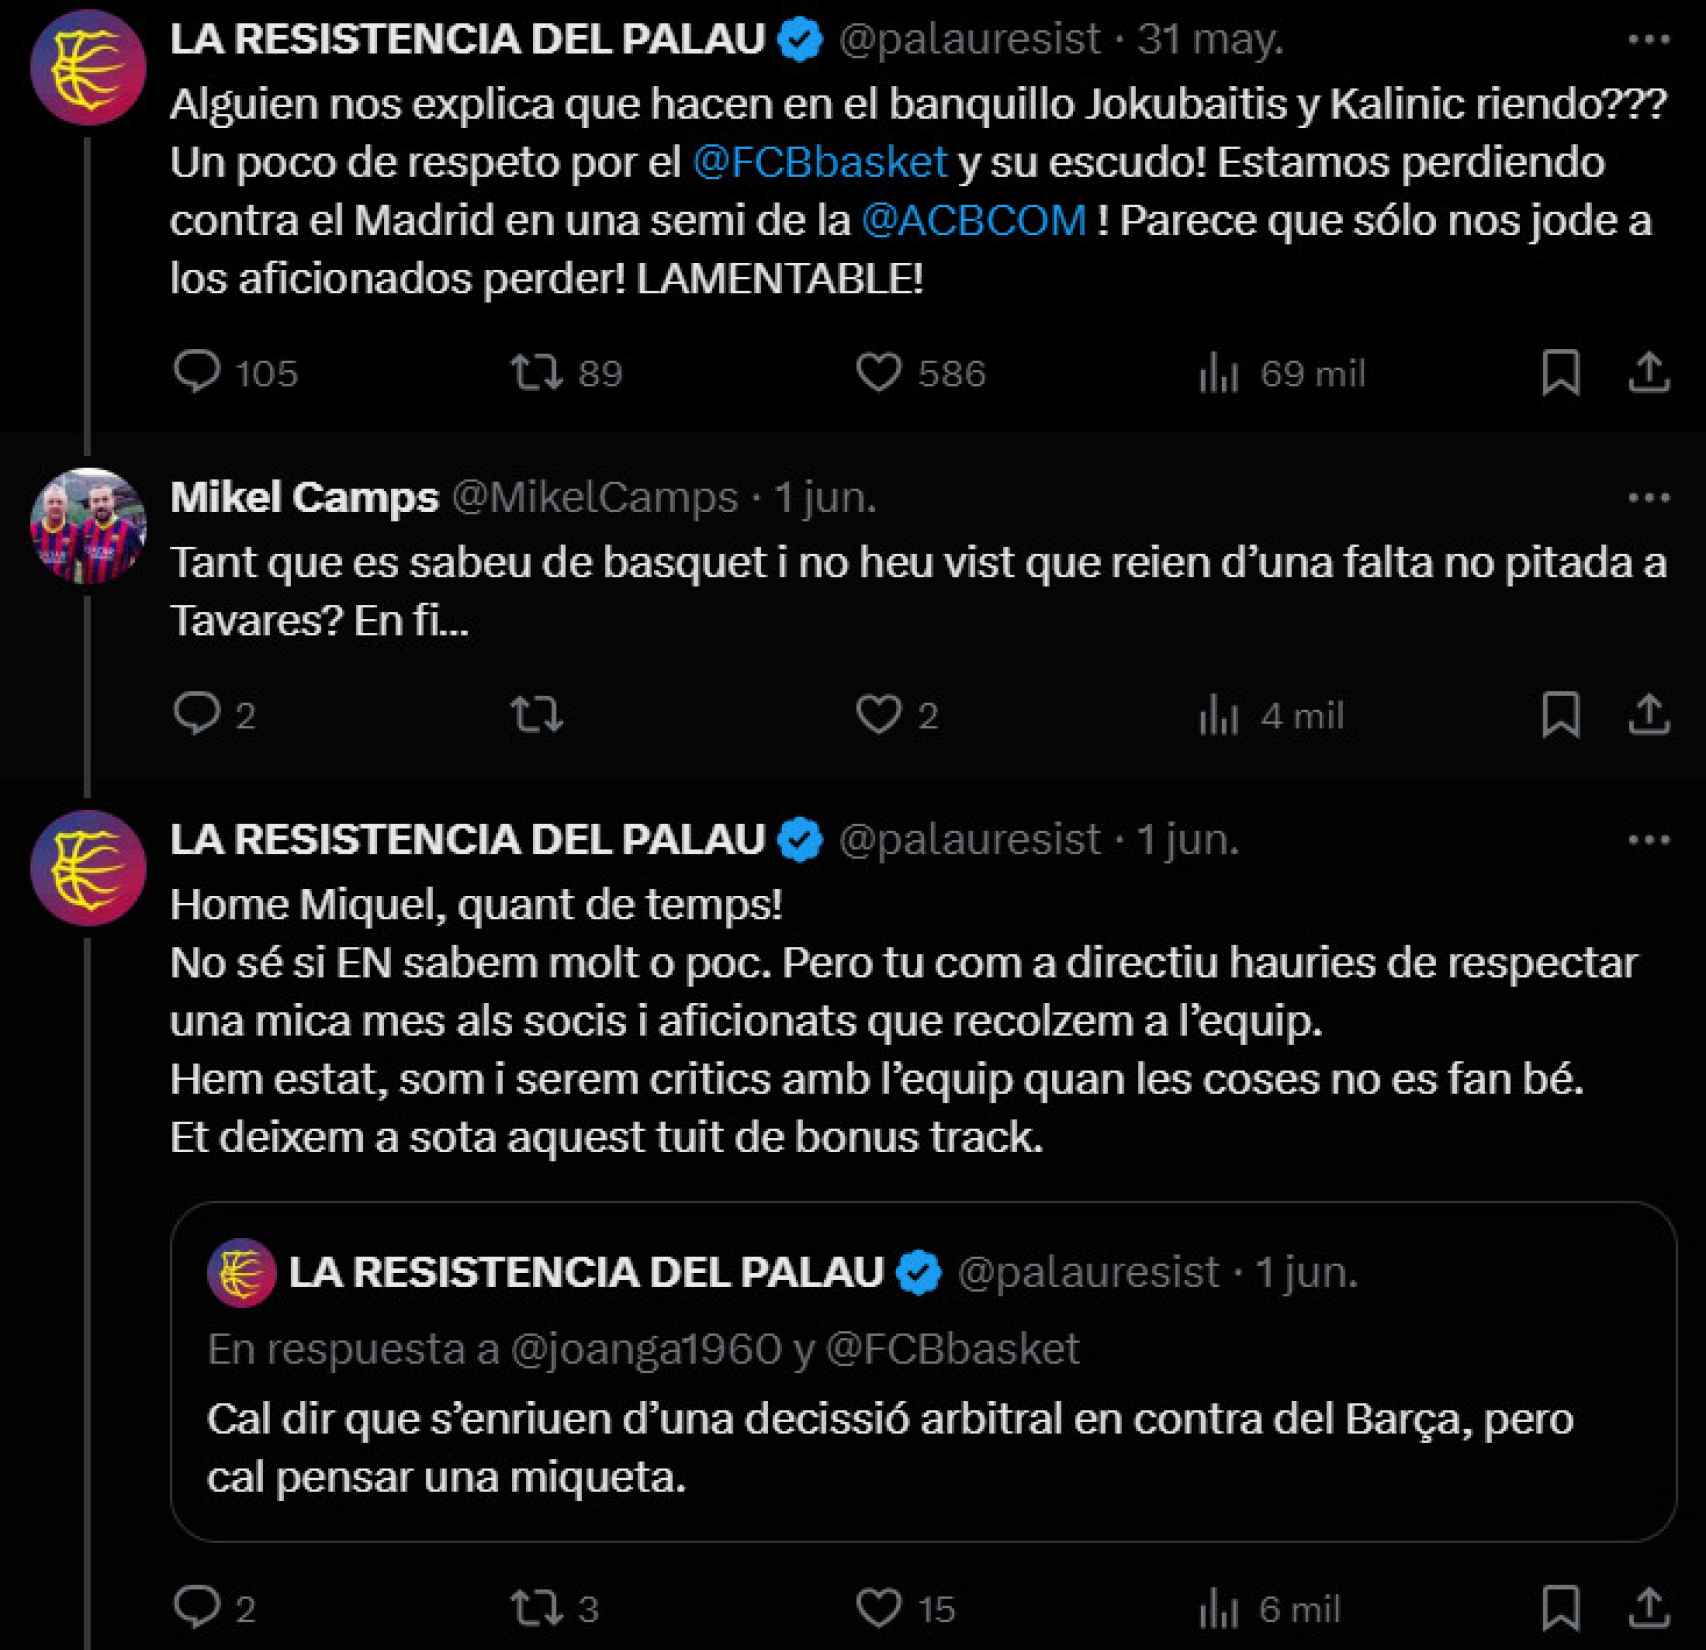 Conversación en Twitter entre Miquel Camps y 'La resistencia del Palau'